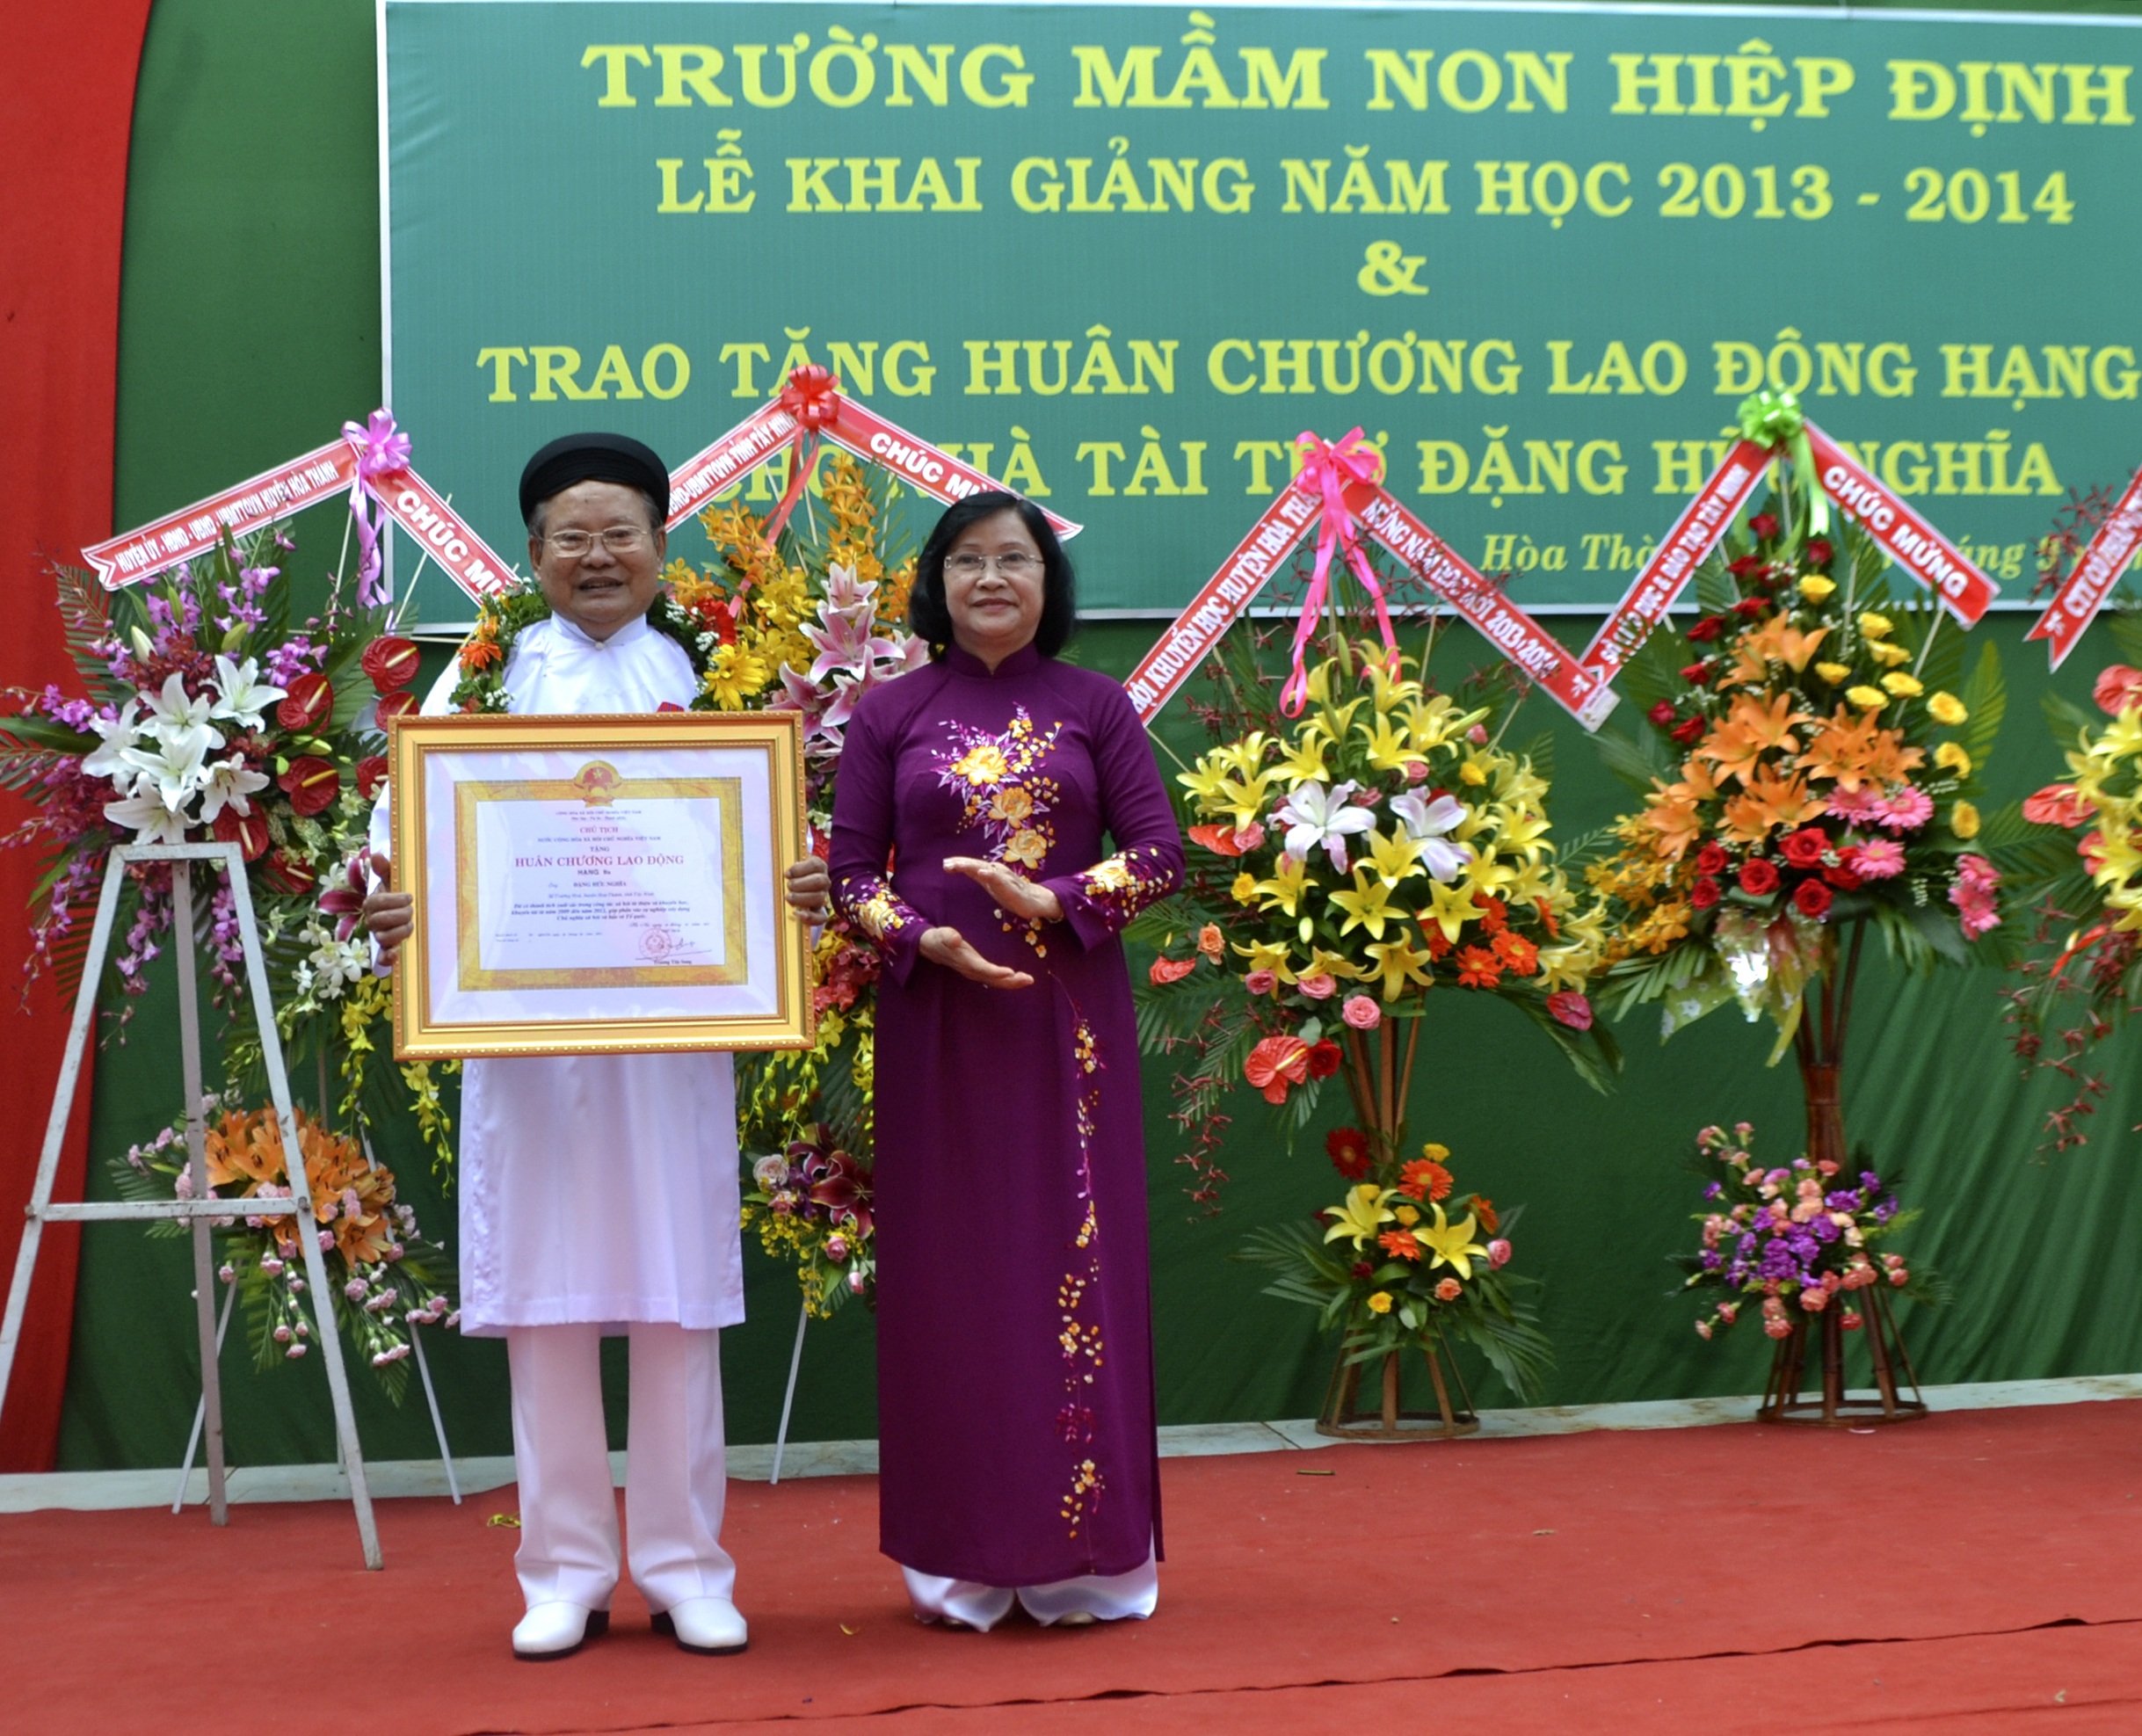 Chủ tịch UBND tỉnh Nguyễn Thị Thu Thủy thừa ủy nhiệm Chủ tịch Nước CHXHCN Việt Nam trao tặng Huân chương lao động hạng Ba cho Ông Đặng Hữu Nghĩa